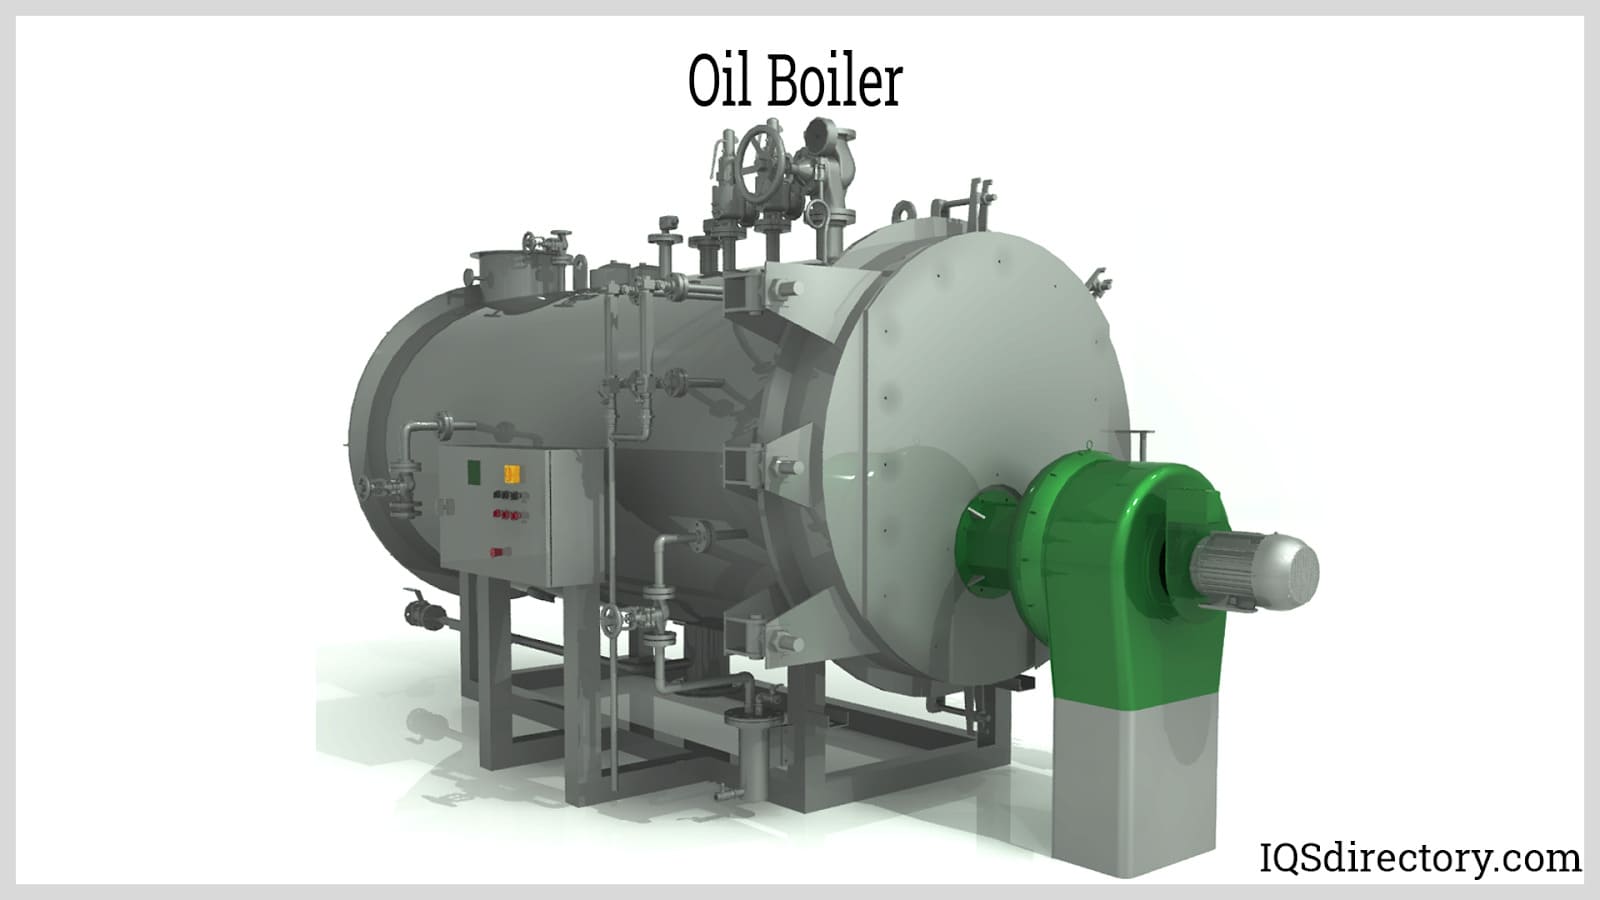 Oil Boiler